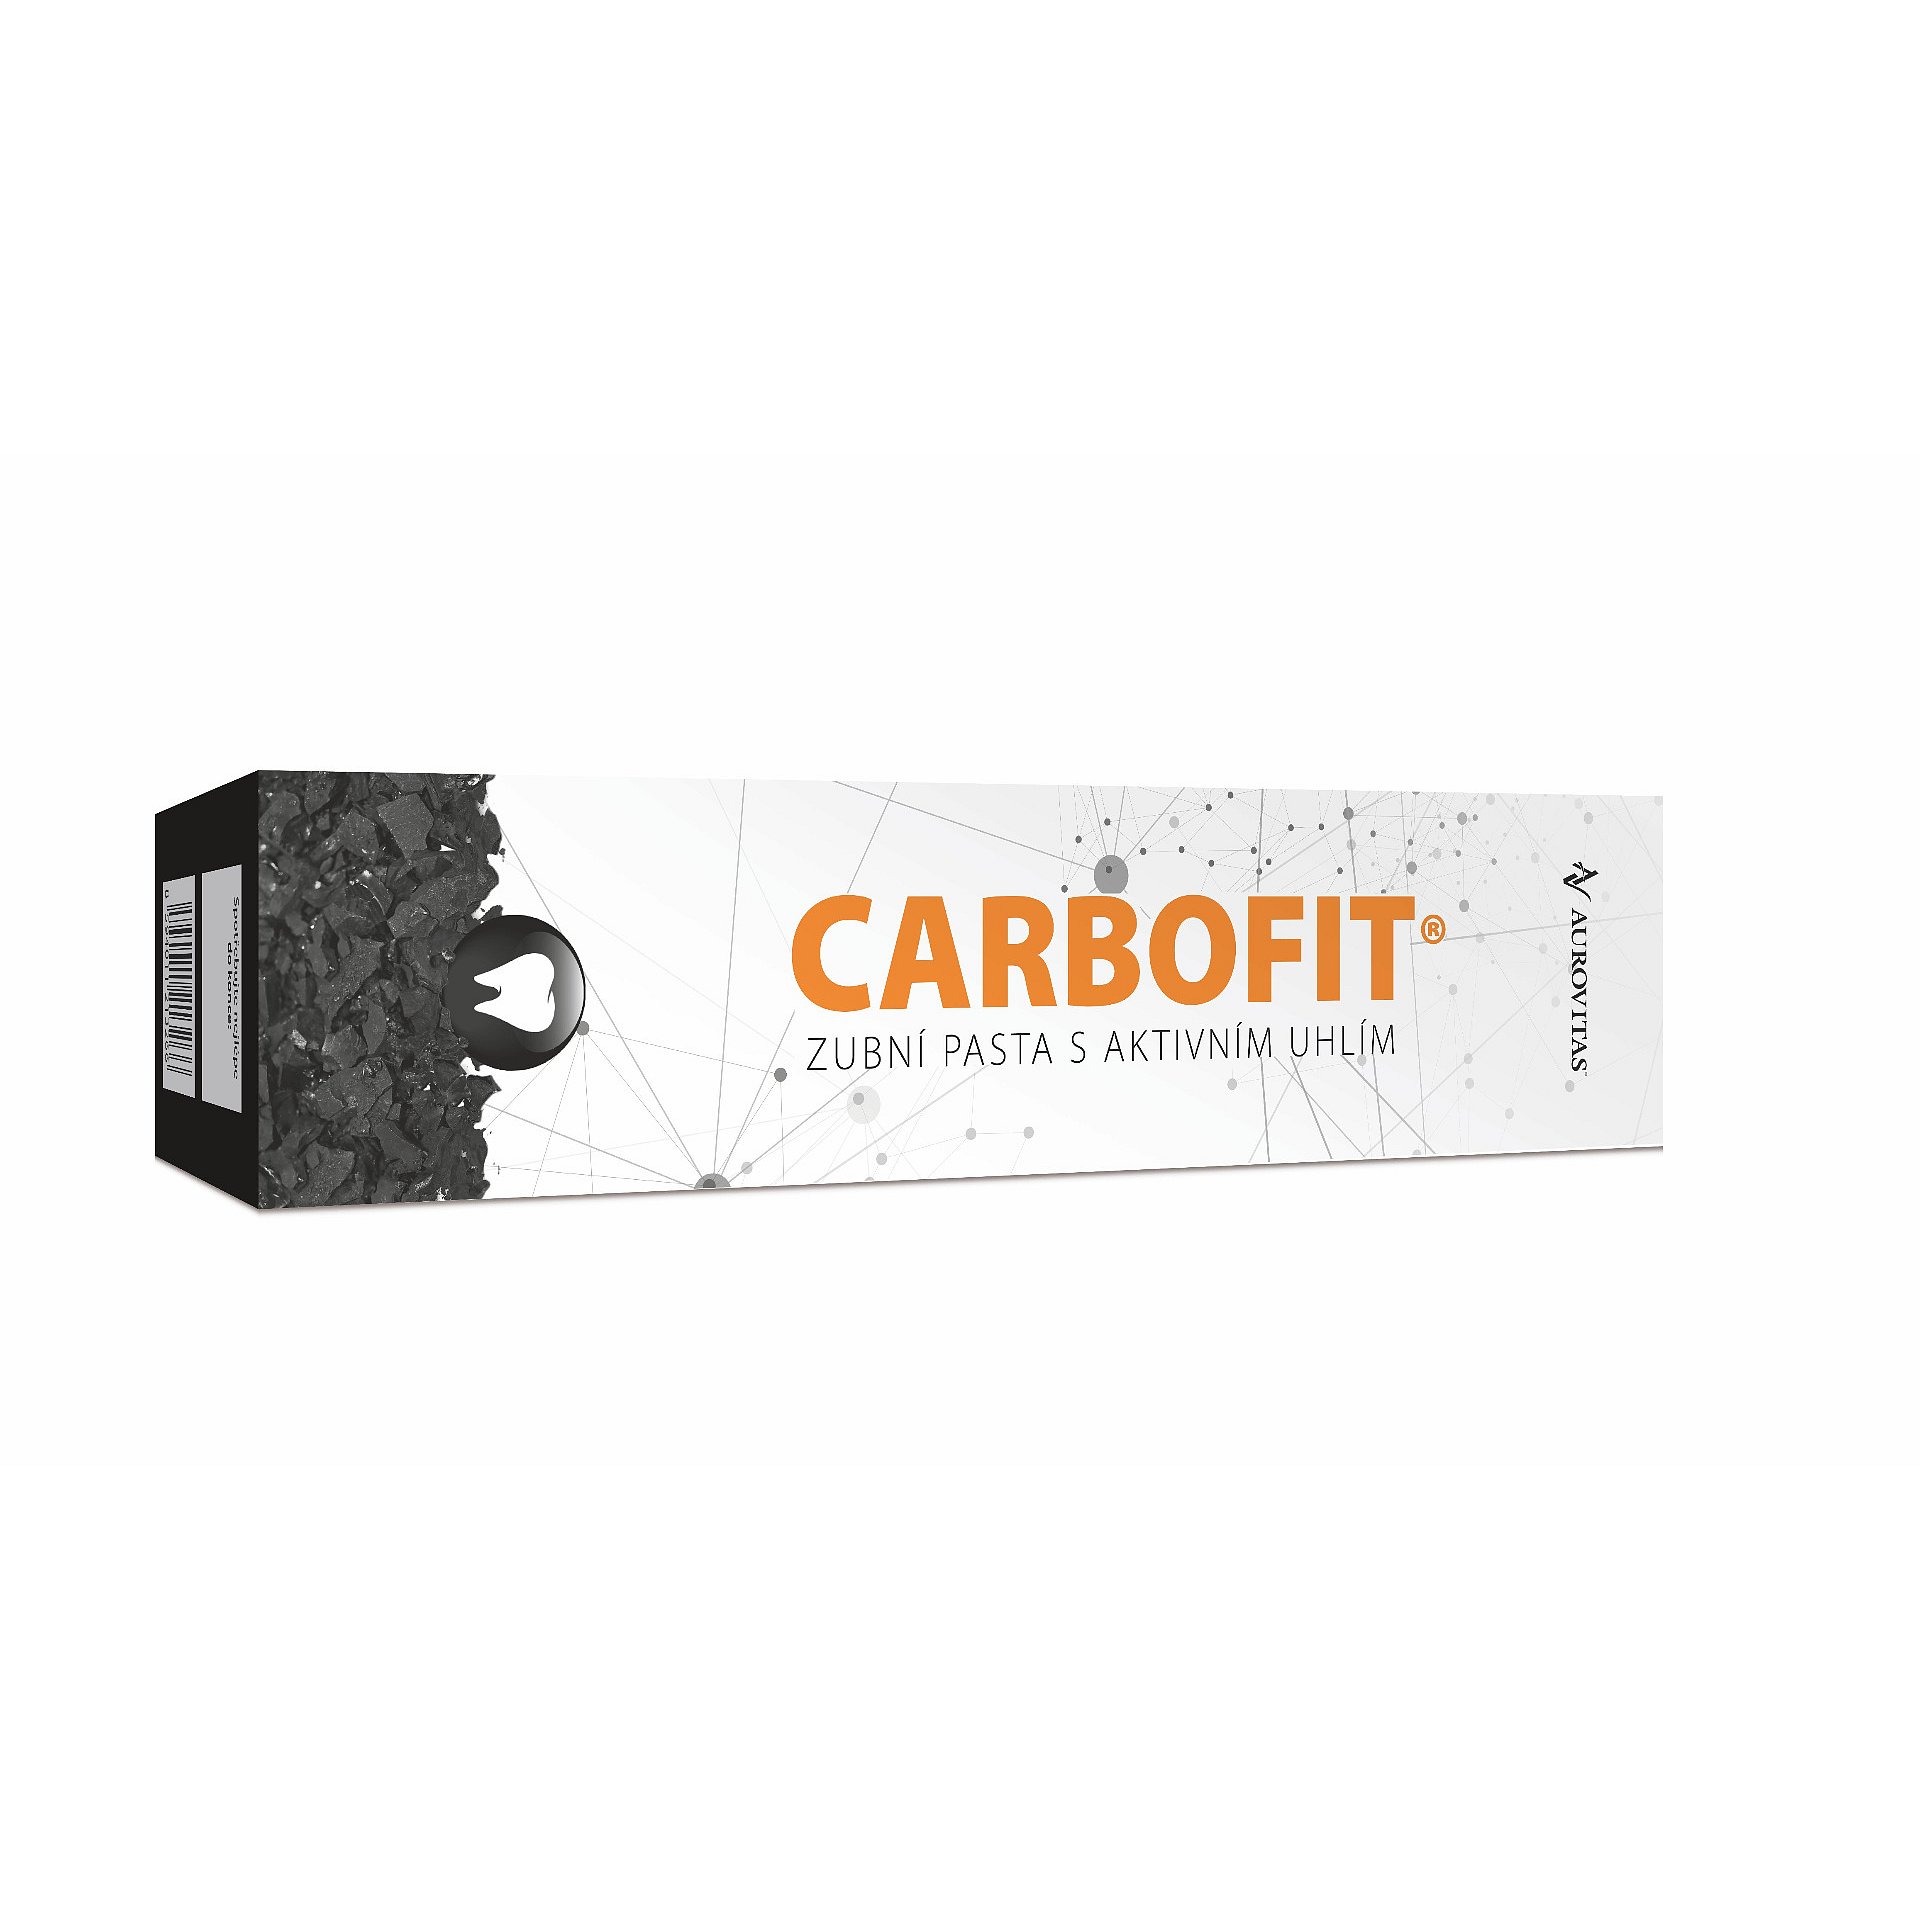 Carbofit Zubní pasta s aktivním uhlím 100 g